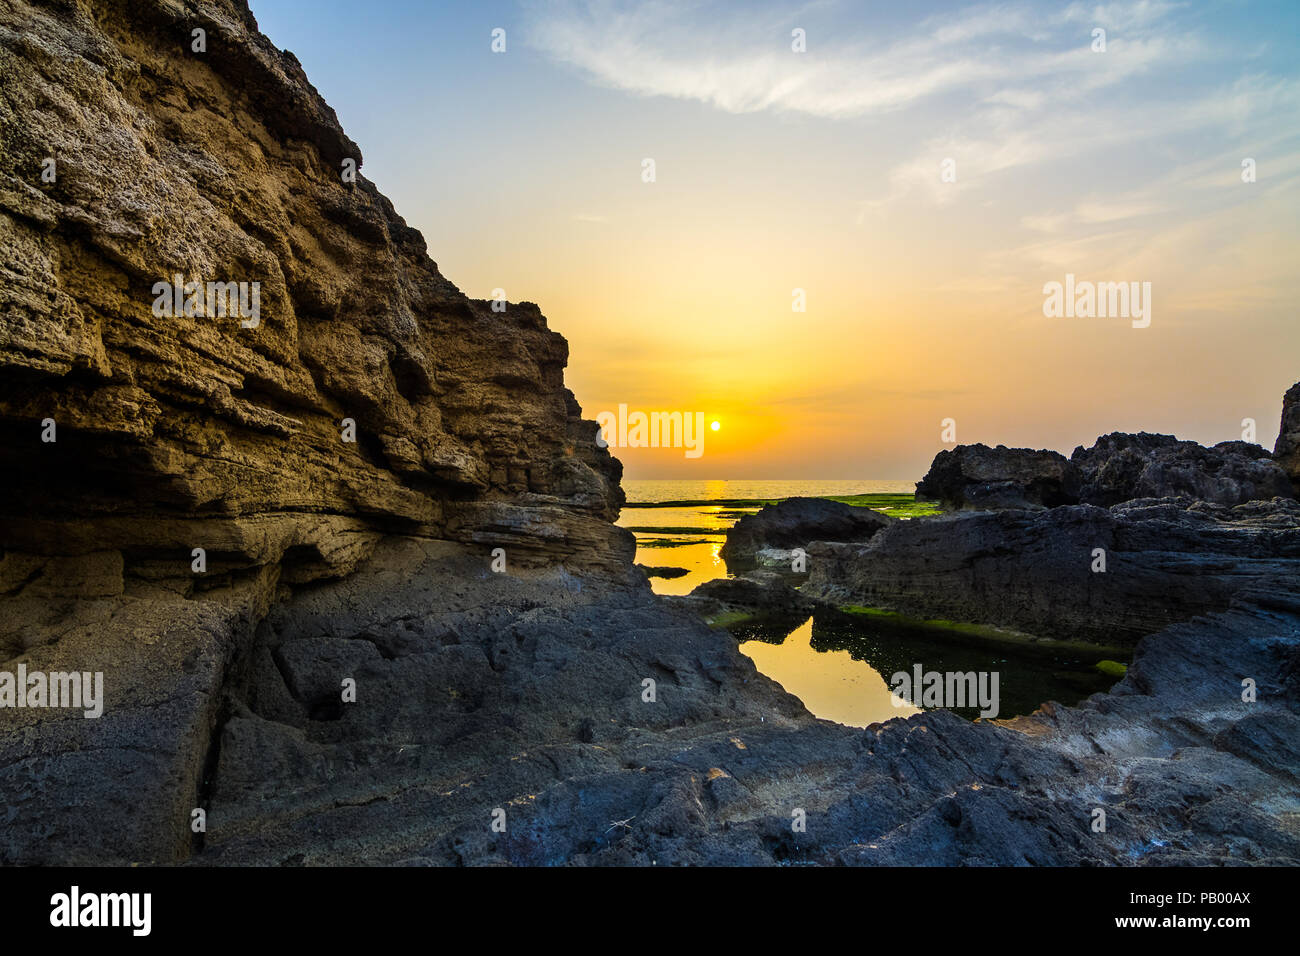 Sunset in Jbeil Byblos, Lebanon Stock Photo